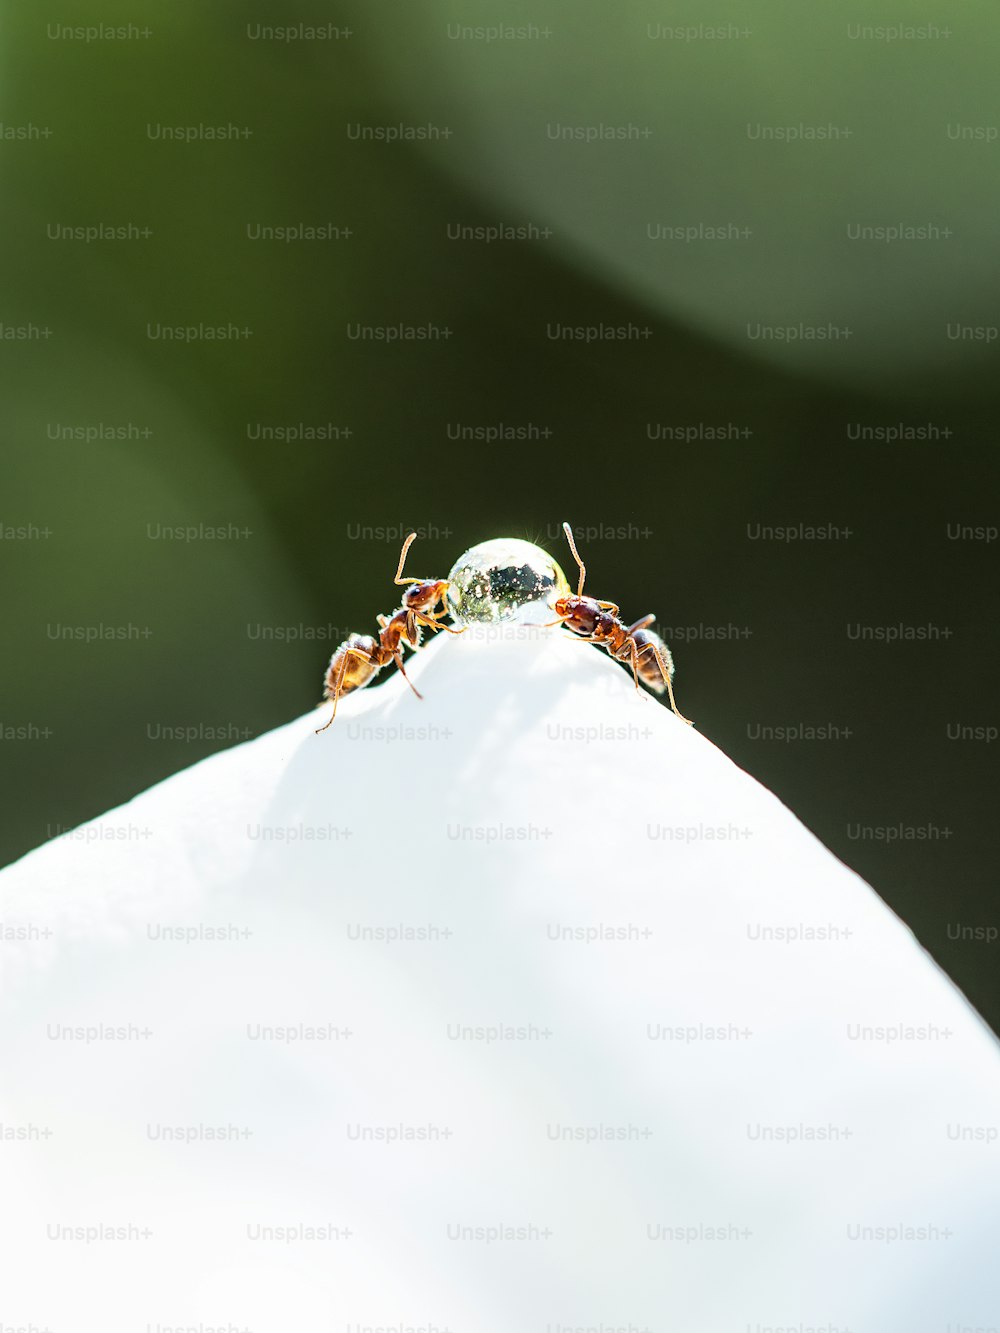 Un primer plano de dos pequeños insectos en una superficie blanca